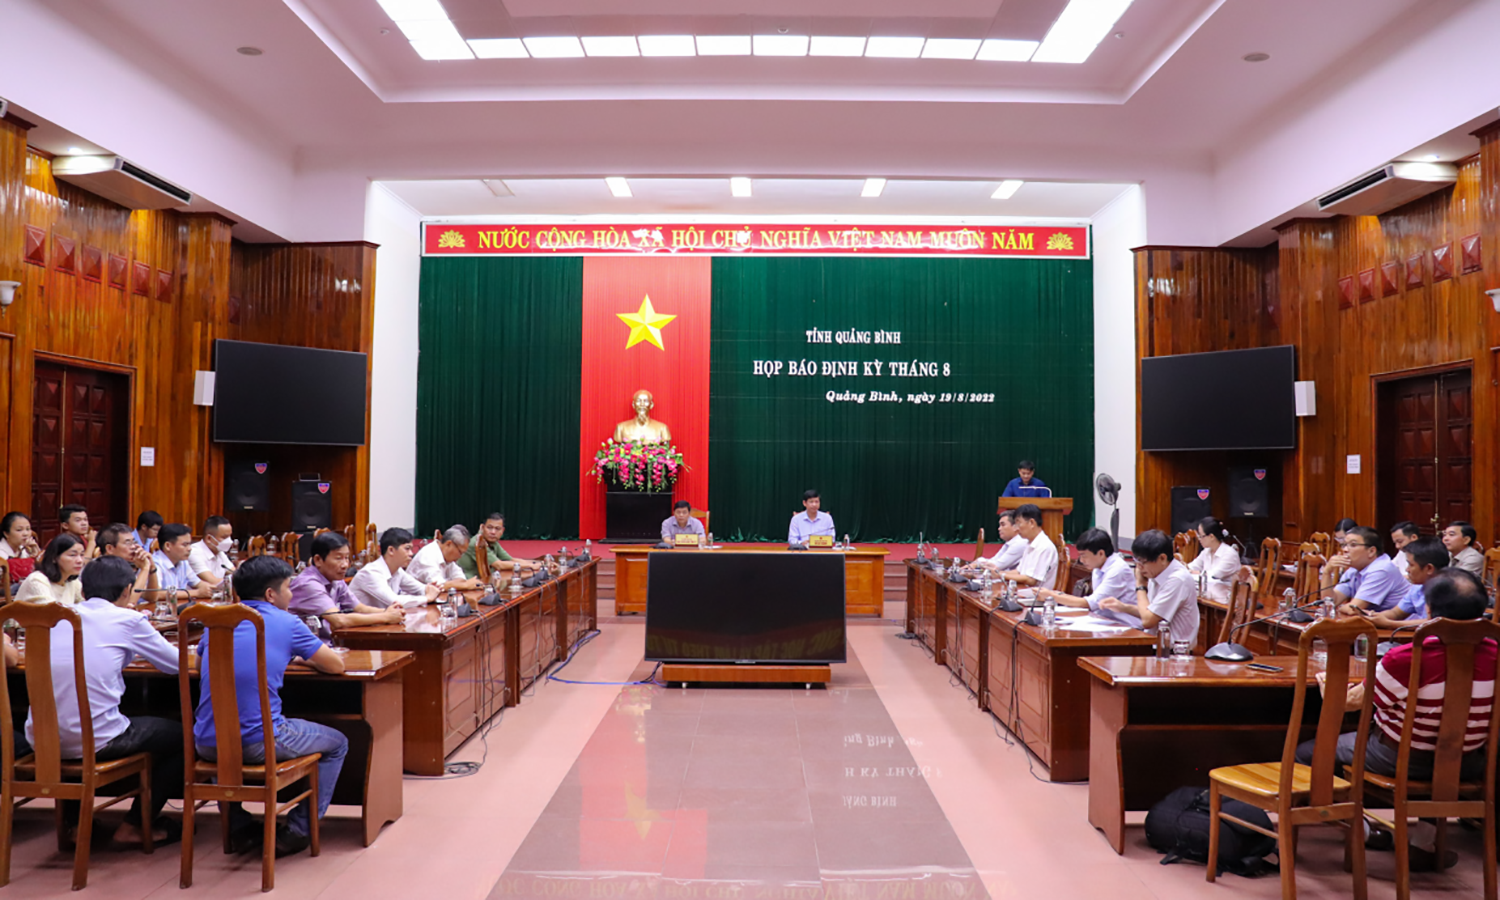 Đồng chí Phó Chủ tịch UBND tỉnh Hồ An Phong và đồng chí Phó trưởng Ban Tuyên giáo Tỉnh ủy Trần Ngọc Ánh cung cấp thông tin cho báo chí định kỳ.